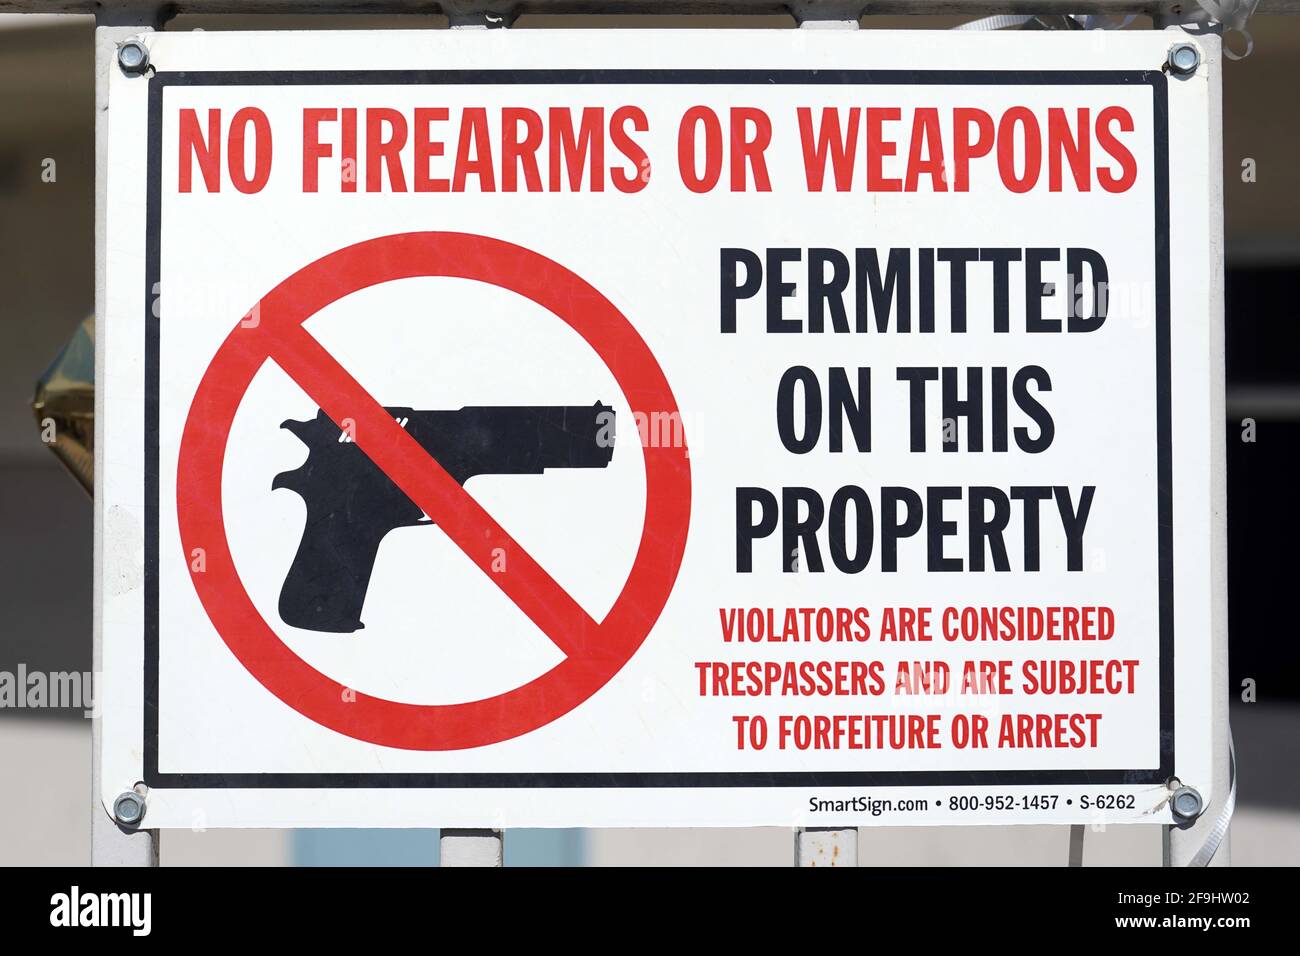 Aucune arme à feu ou arme n'est autorisée sur l'enseigne de propriété à l'école élémentaire Brightwood, le dimanche 19 avril 2021, à Monterey Park, Calif. Banque D'Images